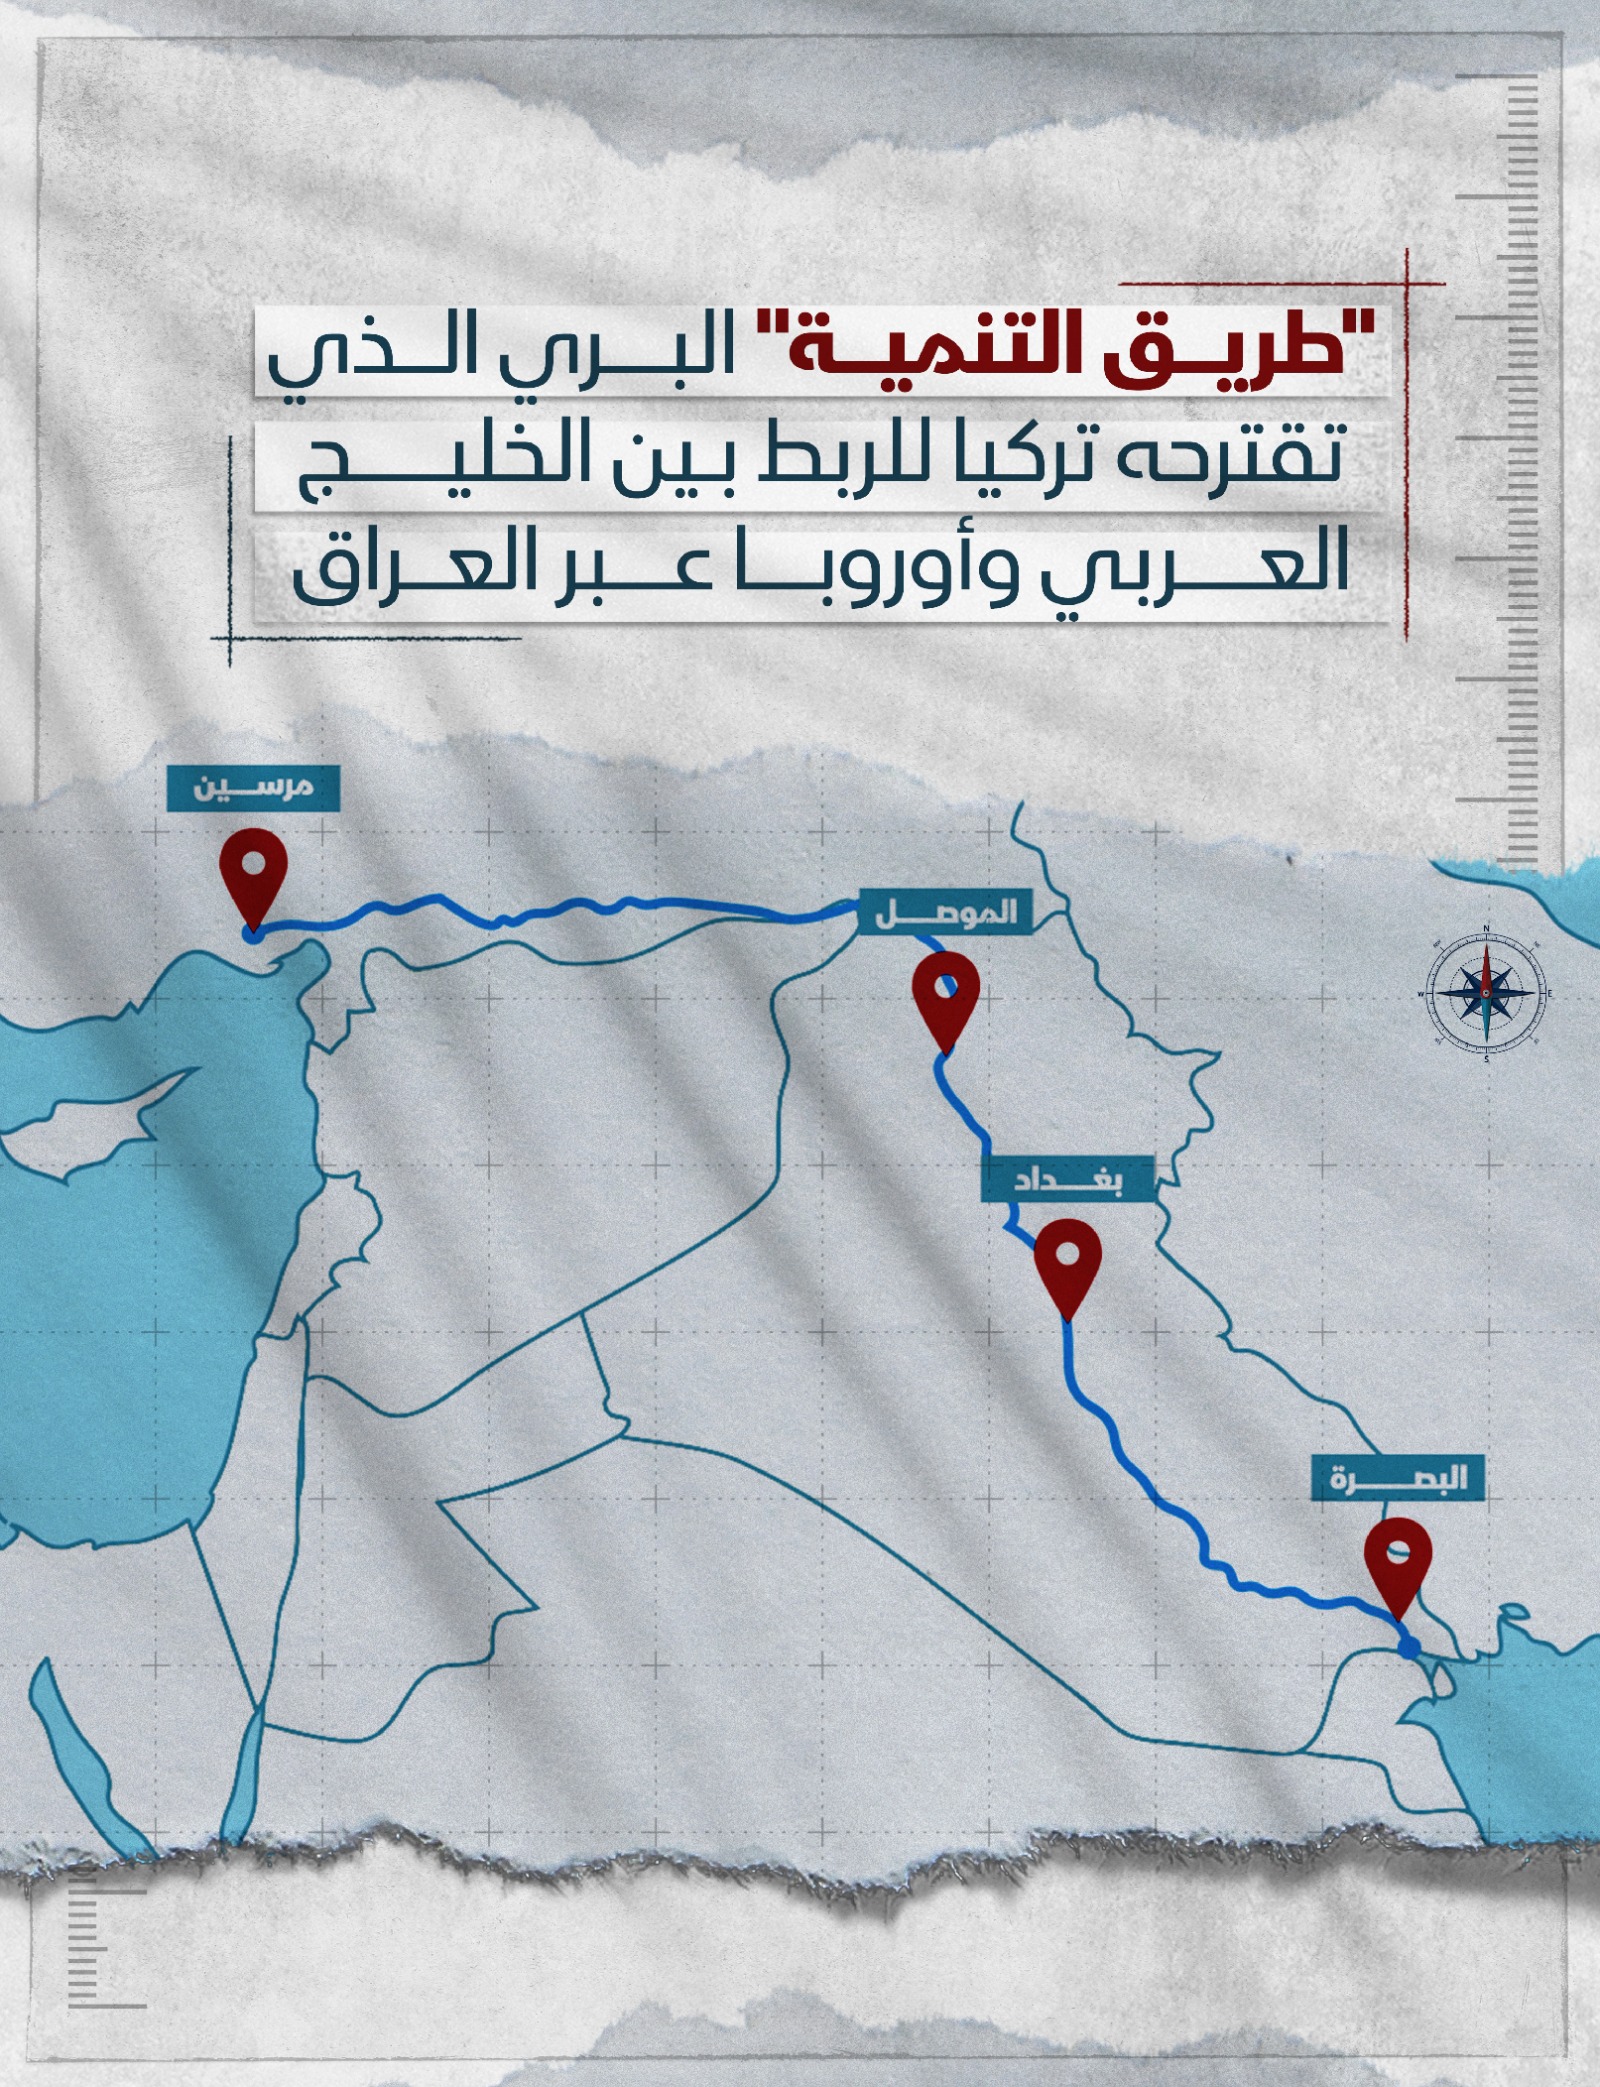 'طريق التنمية' البري الذي تقترحه تركيا للربط بين الخليج العربي وأوروبا عبر العراق